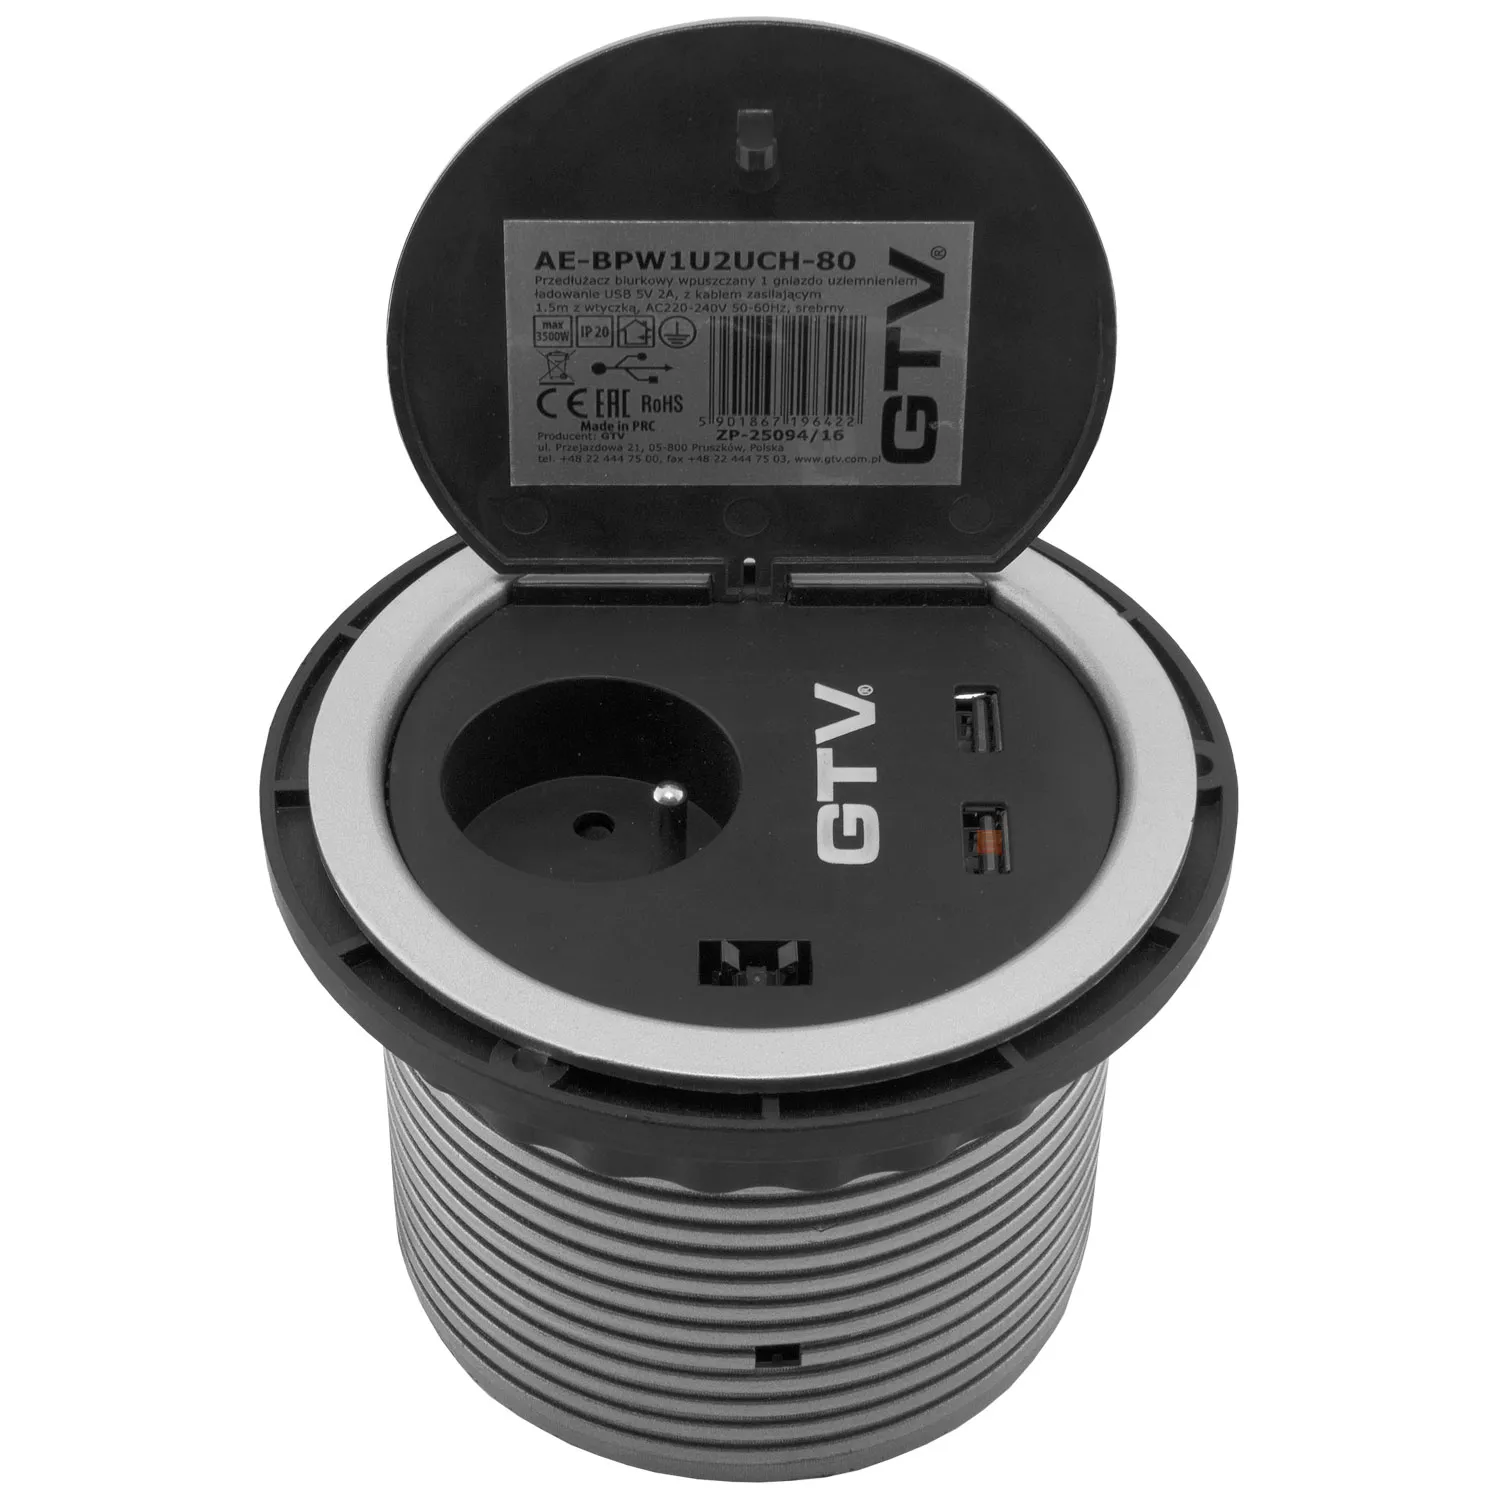 Gniazdo wpuszczane chowane w blat fi 100 USB Charger Szare GTV